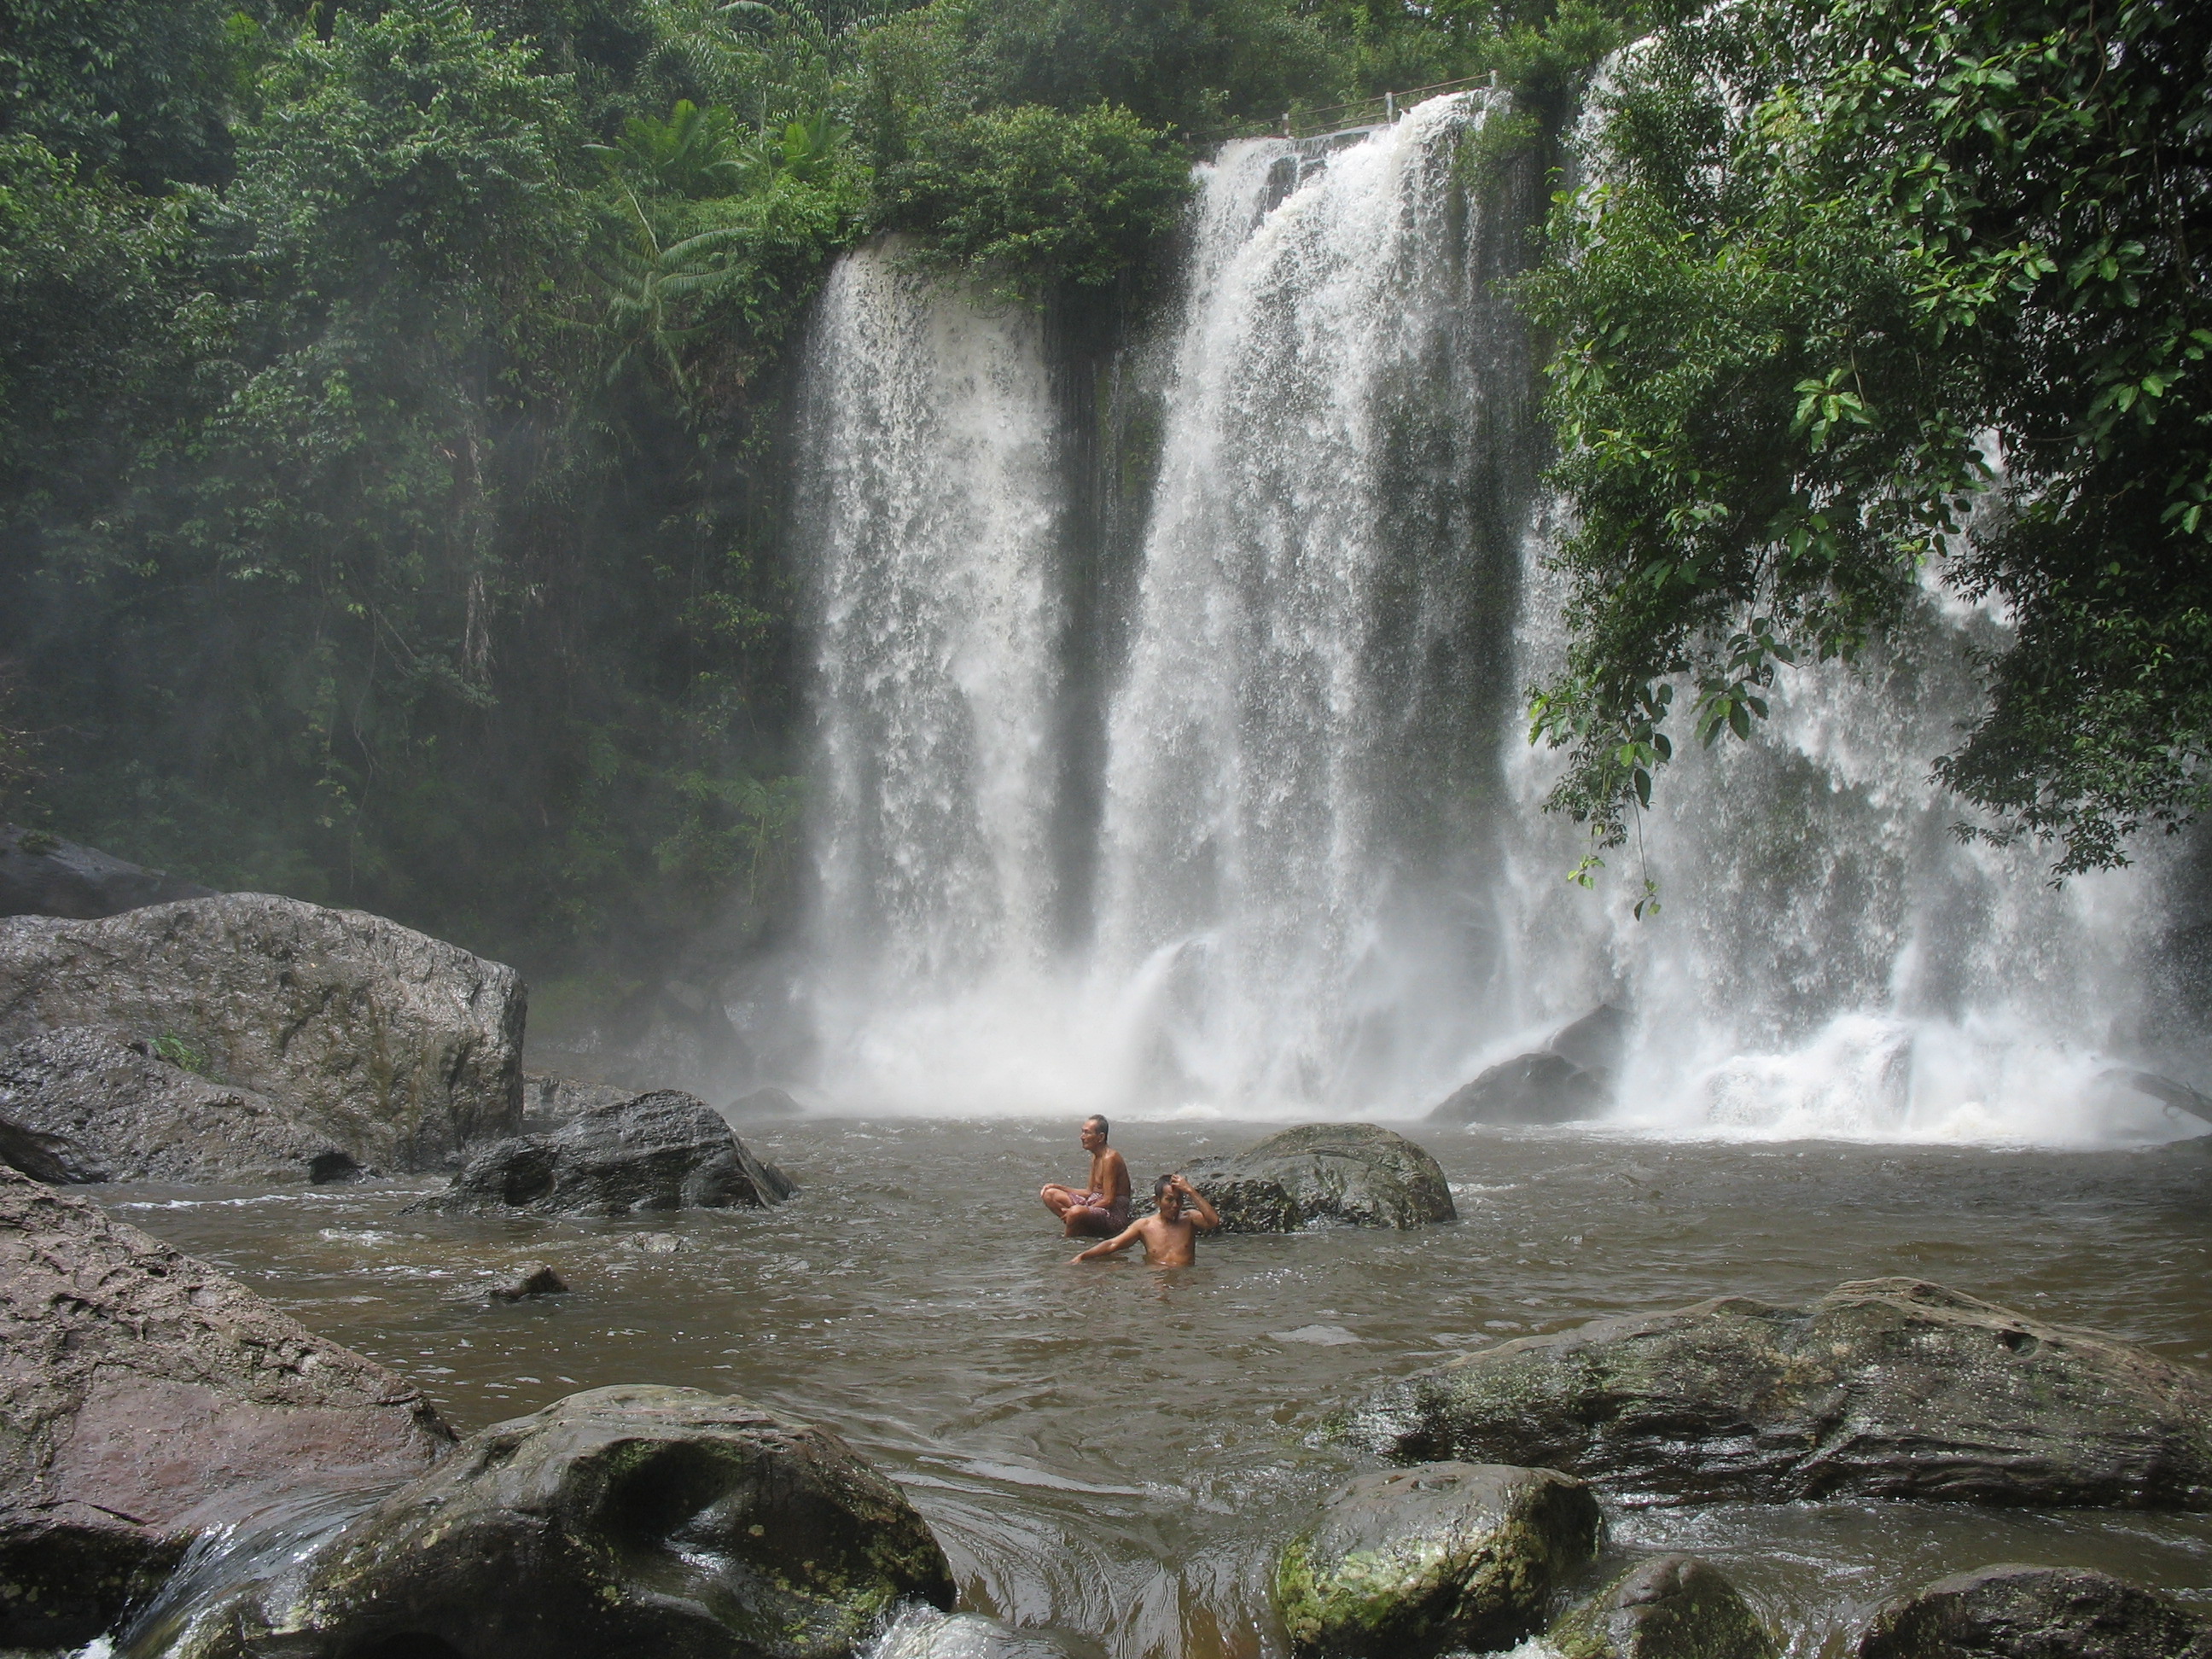 La cascata all'interno del parco di Phonm Kulen, Cambogia